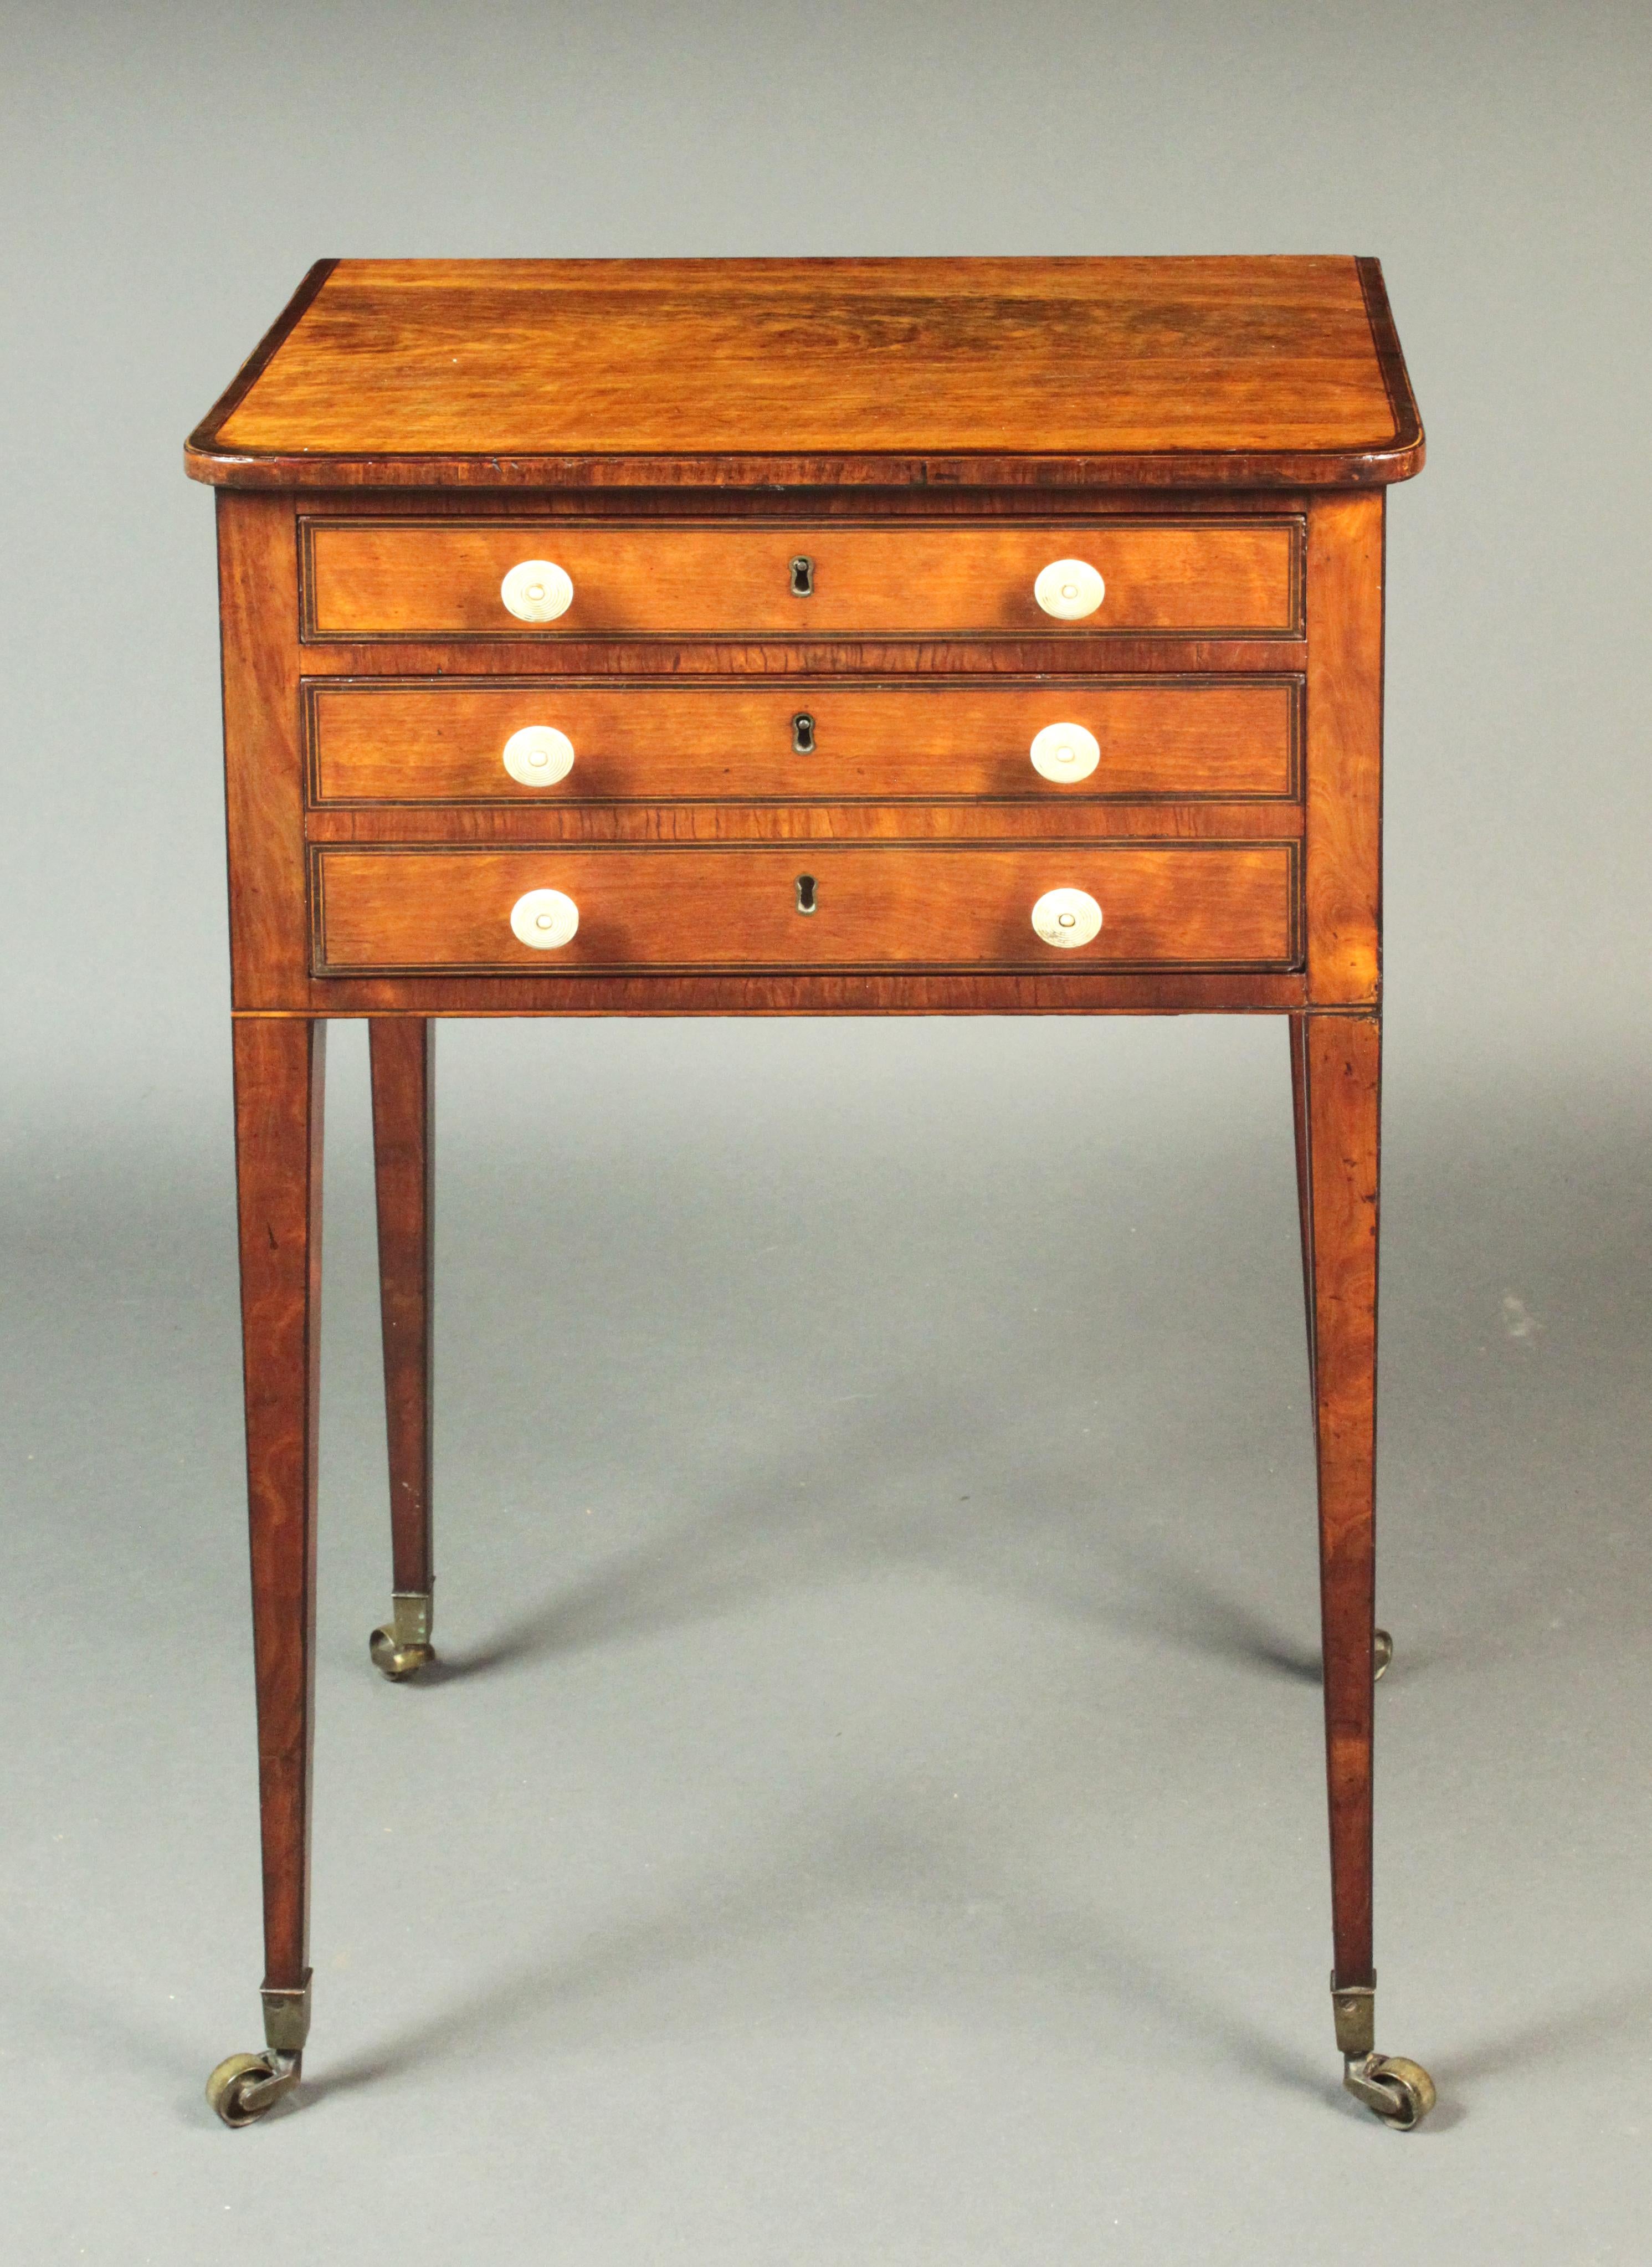 Fine table de couture en bois de satin de la période George III Sheraton ; tiroir supérieur ajusté, deux glissières à bougies et un tiroir à encre sur le côté ; le dos avec un rabat pliant et un crochet en bois supplémentaire pour tenir un sac ou un